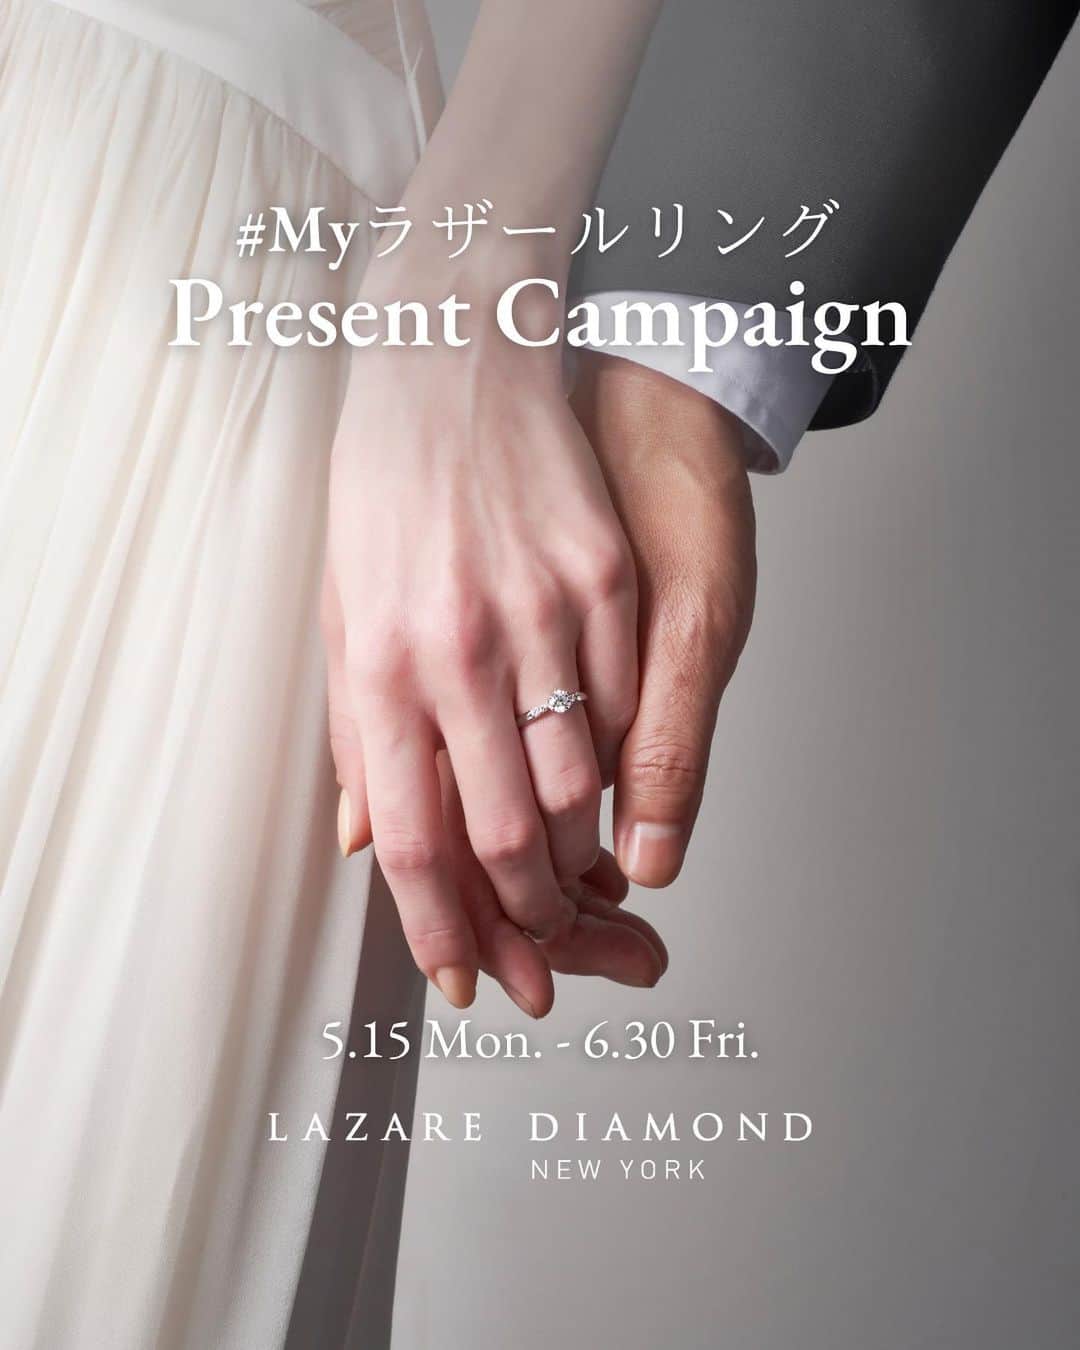 ラザール ダイヤモンド ブティック公式 | 婚約・結婚指輪のインスタグラム：「＃Myラザールリング Present Campaign 5/15(月)～6/30(金)  上記期間中、ラザール ダイヤモンド ブティックの婚約指輪または結婚指輪のお写真を、指定ハッシュタグをつけてご投稿いただいた方の中から合計10名様に、特別なプレゼントをご用意いたします。  👑ソウ・エクスペリエンス Relax Gift（GREEN）【5名様】 ボディケアやヘッドスパ、フラワーレッスンなど、癒される時間と体験が選べるギフト ＜収録内容＞88体験 / 1,057コースと36グッズ ＜収録エリア＞47都道府県  👑ラザール ダイヤモンド オリジナルジュエリーケース【5名様】  💎応募期間 2023年5月15日(月)～6月30日(金)23:59まで  💎応募方法 ①ラザール ダイヤモンド ブティック公式Instagram @lazarediamond_boutique をフォロー  ②ラザール ダイヤモンド ブティックでご購入いただいた「婚約指輪」または「結婚指輪」のお写真を 「#Myラザールリング 」「#ラザールダイヤモンド 」と、「#婚約指輪 」または「#結婚指輪 」をつけてInstagramフィードへ投稿。  よろしければリングの魅力やそのデザインに決めた理由などもキャプションにてお聞かせください。  💎当選発表 ・7月上旬〜中旬を予定しております。 ・当選のご連絡は当選された方にのみ、当アカウントよりDMにてお送りいたします。DMの受信設定をご確認ください。  ※プレゼントは選べません。 ※本アカウント以外の別アカウントからDMをお送りすることはございません。必ず本アカウントからの連絡であることをご確認いただき、不審な連絡があった際はお手数ですが本アカウントへお知らせいただけますと幸いです。  ※賞品発送に関わる個人情報以外に、クレジットカード情報など個人情報の入力を依頼することはございません。  皆さまのご参加をお待ちしております。  ------------------------- ＊本アカウント(@lazarediamond_boutique)がラザール ダイヤモンド ブティック公式アカウントとなります。なりすましアカウントにはご注意ください。 ＊既にフォローいただいている方もキャンペーンの当選対象となります。 ＊アカウント非公開設定の方は対象外です。 ＊お届け先は日本国内のみとさせていただきます。 -------------------------  ■注意事項 ＜体験ギフトについて＞ ・チケットの有効期間は6カ月間です。 ・体験予約、申込方法は、WEBとなり、通信にかかる費用はお客さまのご負担となります。 ・予約期限があります。チケットの有効期限の2週間前までにご予約を行なってください。なお、期限の延長はできませんのでご注意ください。 ・ご利用できる体験の種類や施設、コース内容、エリア等は、予告なく変更になる可能性があります。最新情報は、予約サイトでご確認ください。 ・体験場所までの往復交通費など諸経費はお客さまのご負担となります。  ＜キャンペーン参加について＞ ・本キャンペーンにご参加いただくことにより、キャンペーン要項に同意いただいたものとみなします。（未成年の方については、親権者に同意いただいたものとみなします） ・当選された方の住所が不明で賞品をお届けできない場合は、当選を無効とさせていただく場合がございます。 ・応募内容に不備・虚偽等がある場合は、当選を無効とさせていただきます。 ・当選時、応募者のアカウントフォロー及び投稿の状態が継続されていることが確認できない場合、抽選の対象から外れる場合がございます。 ・DM受信のブロックやネット環境が原因での不着、または当選通知のDMに記載の手続きを履行いただけない場合は、当選を無効とさせていただきます。 ・本キャンペーン参加にあたって生じる通信料は、ご本人様負担となります。 ・当選DMを送信後、期限内に返信を確認できない場合は、当選を無効とさせていただきます。 ・本キャンペーンはInstagramが支援、承認、運営、関与するものではございません。 ・本キャンペーンは、主催側が継続不可能と判断した場合、中止する場合がございます。また、主催側は何人に対しても責任を負うものではありません。 ・当選に関わるお問い合わせは一切お受けいたしかねます。予めご了承ください。 ・応募いただいたお写真やコメントは公式サイトやSNSでご紹介させていただく場合がございます。  ■キャンペーンお問合せ先 当アカウントのDMにご連絡をお願いいたします。 受付時間：平日11時-17時 ※受付時間外のお問い合わせにつきましては、平日3営業日以内に回答いたします。  来店予約はプロフィールのリンクから。 @lazarediamond_boutique」